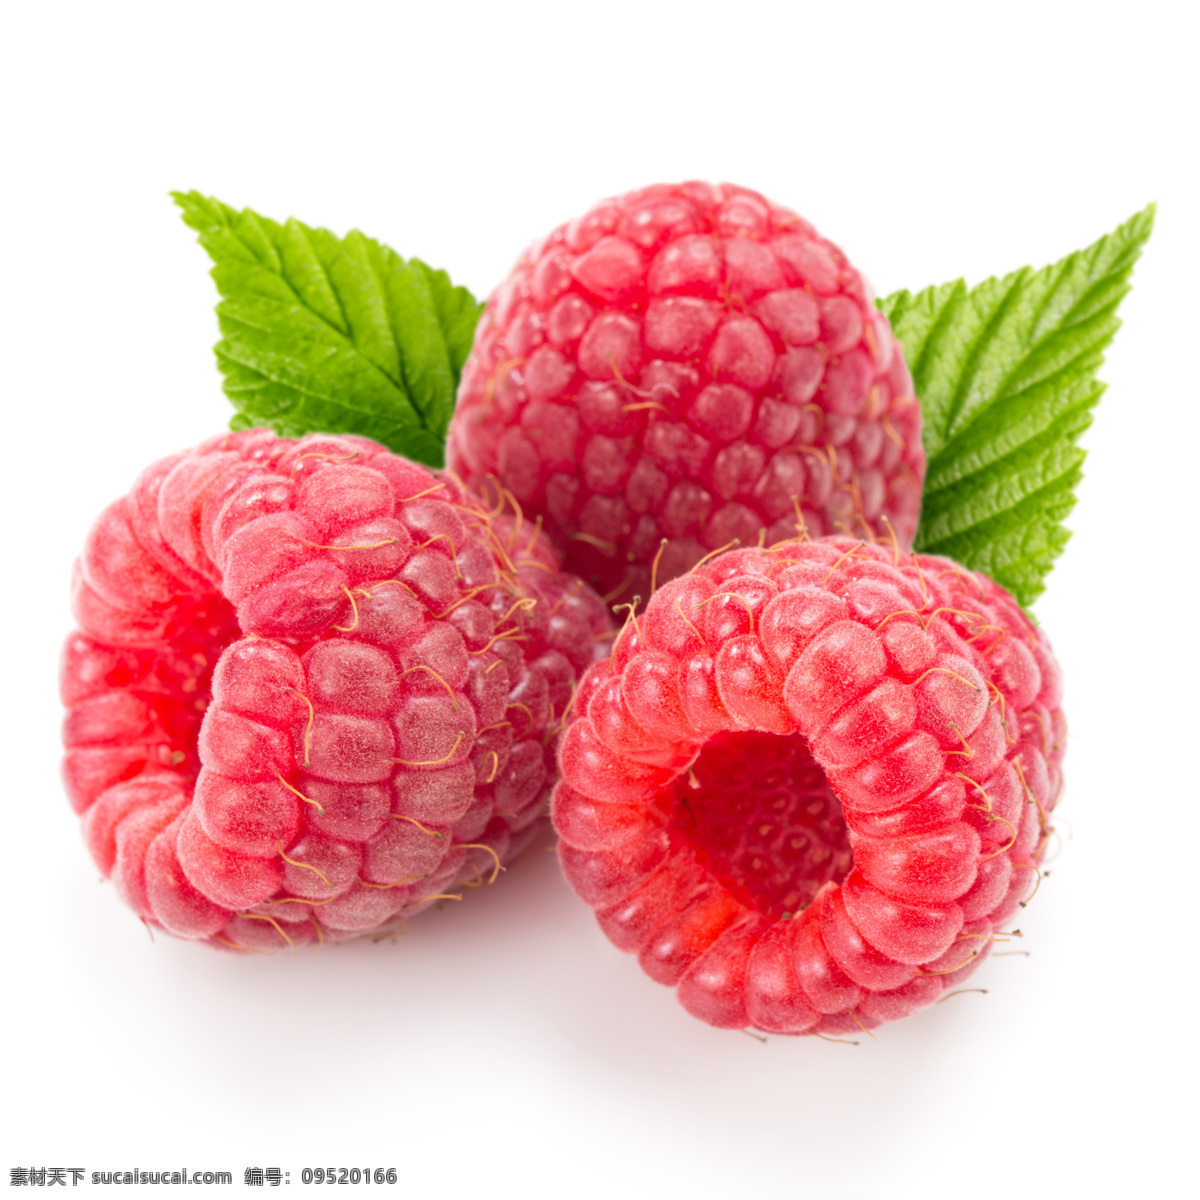 唯美树莓 唯美 营养 健康 鲜果 新鲜 水果 树莓 生物世界